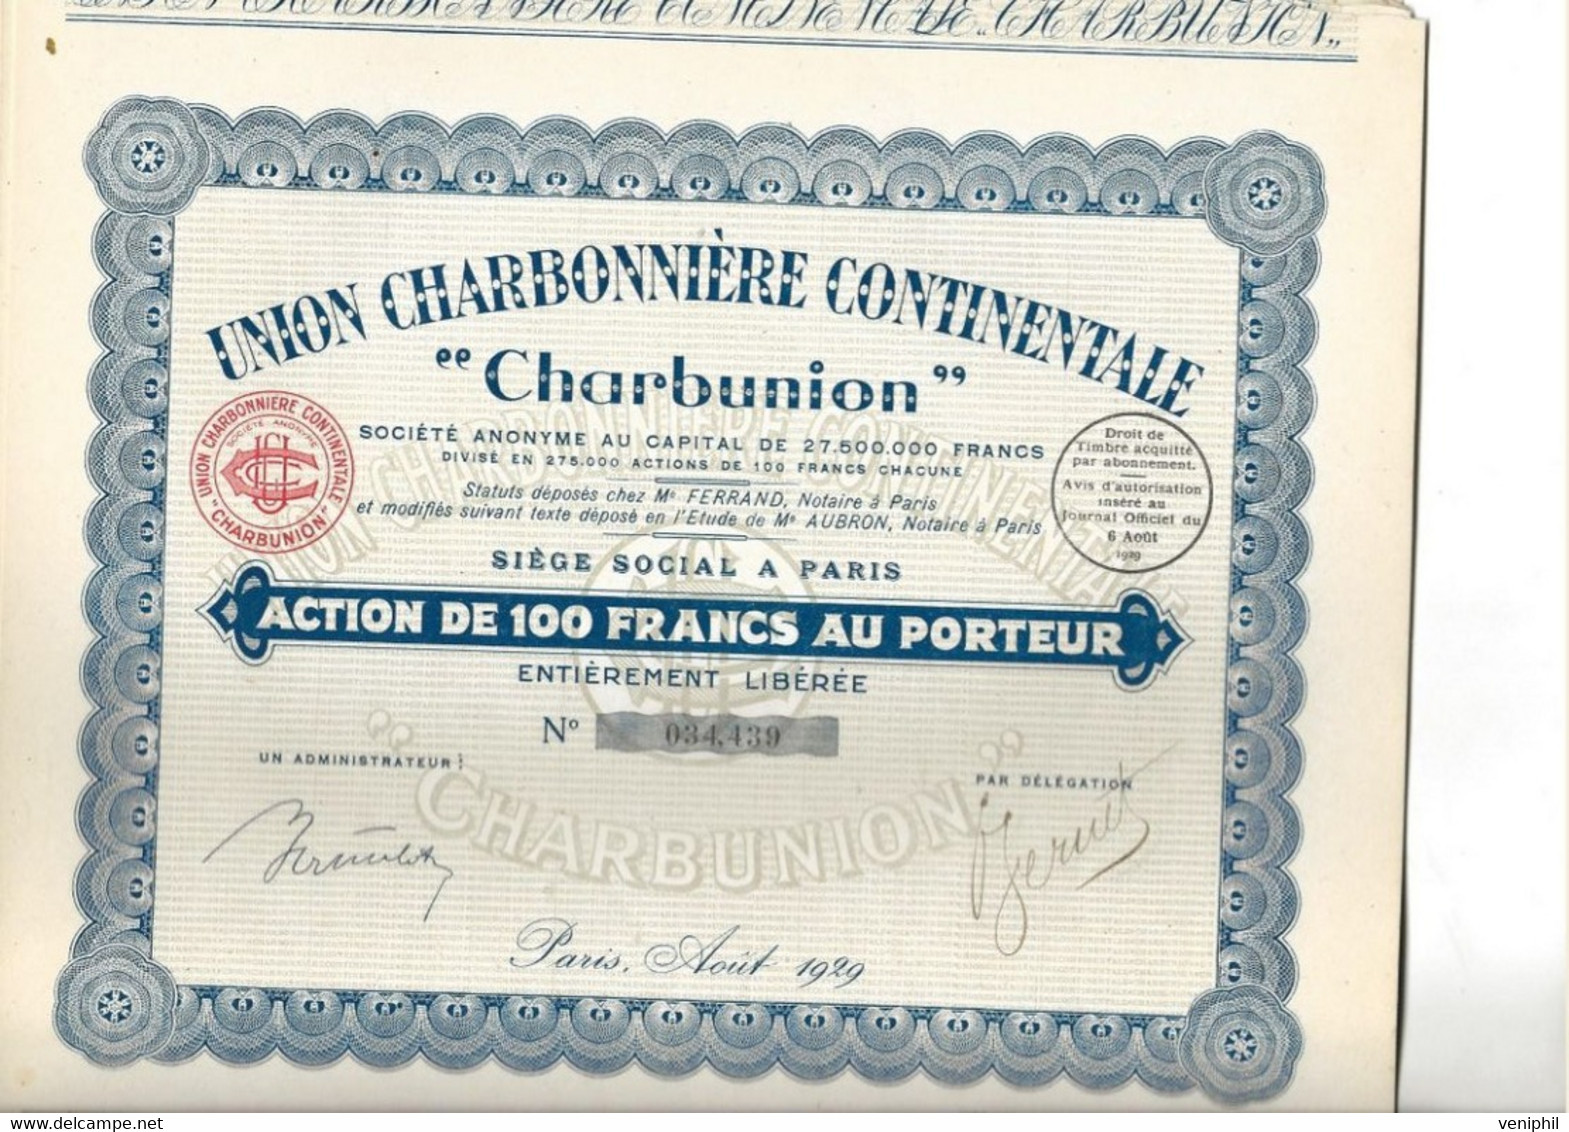 UNION CHARBONNIERE CONTINENTALE " CHARBUNION " - LOT DE 12 ACTIONS DE 100 FRS - ANNEE 1929 - Mines